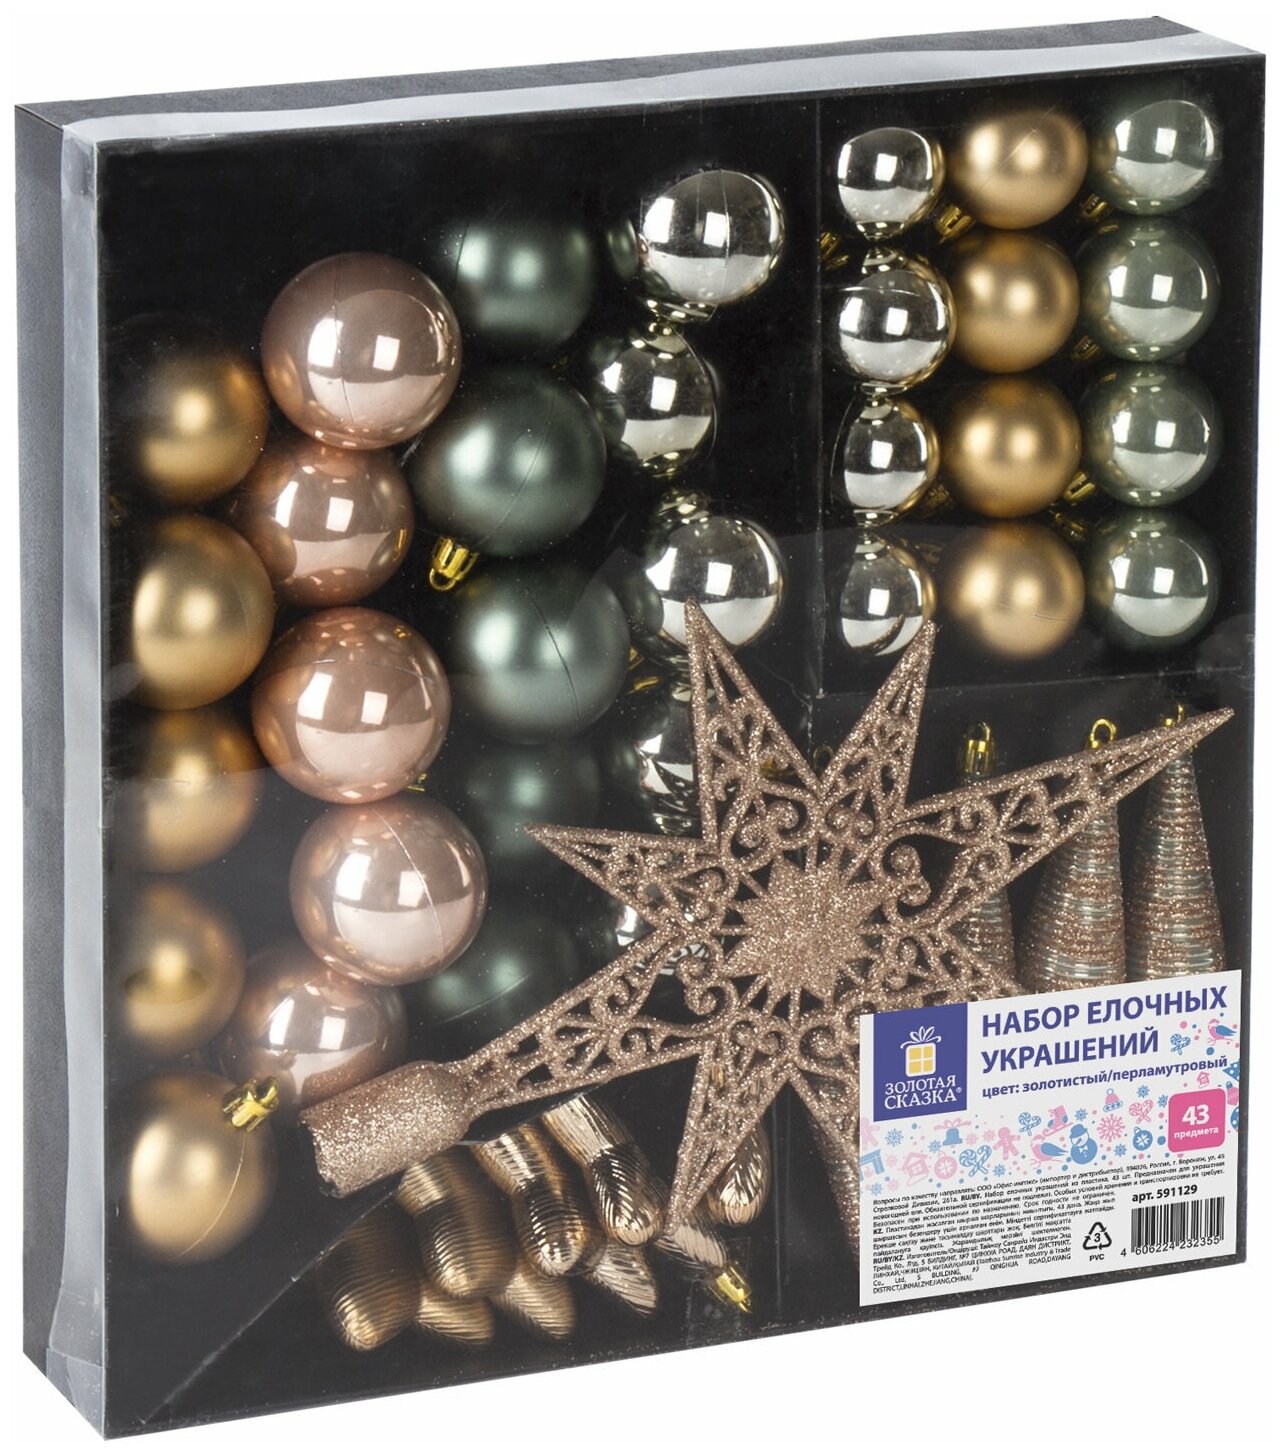 Шары новогодние ёлочные "Pearl River" набор 43 предмета, пластик, золото/перламутр, золотая сказка, 591129